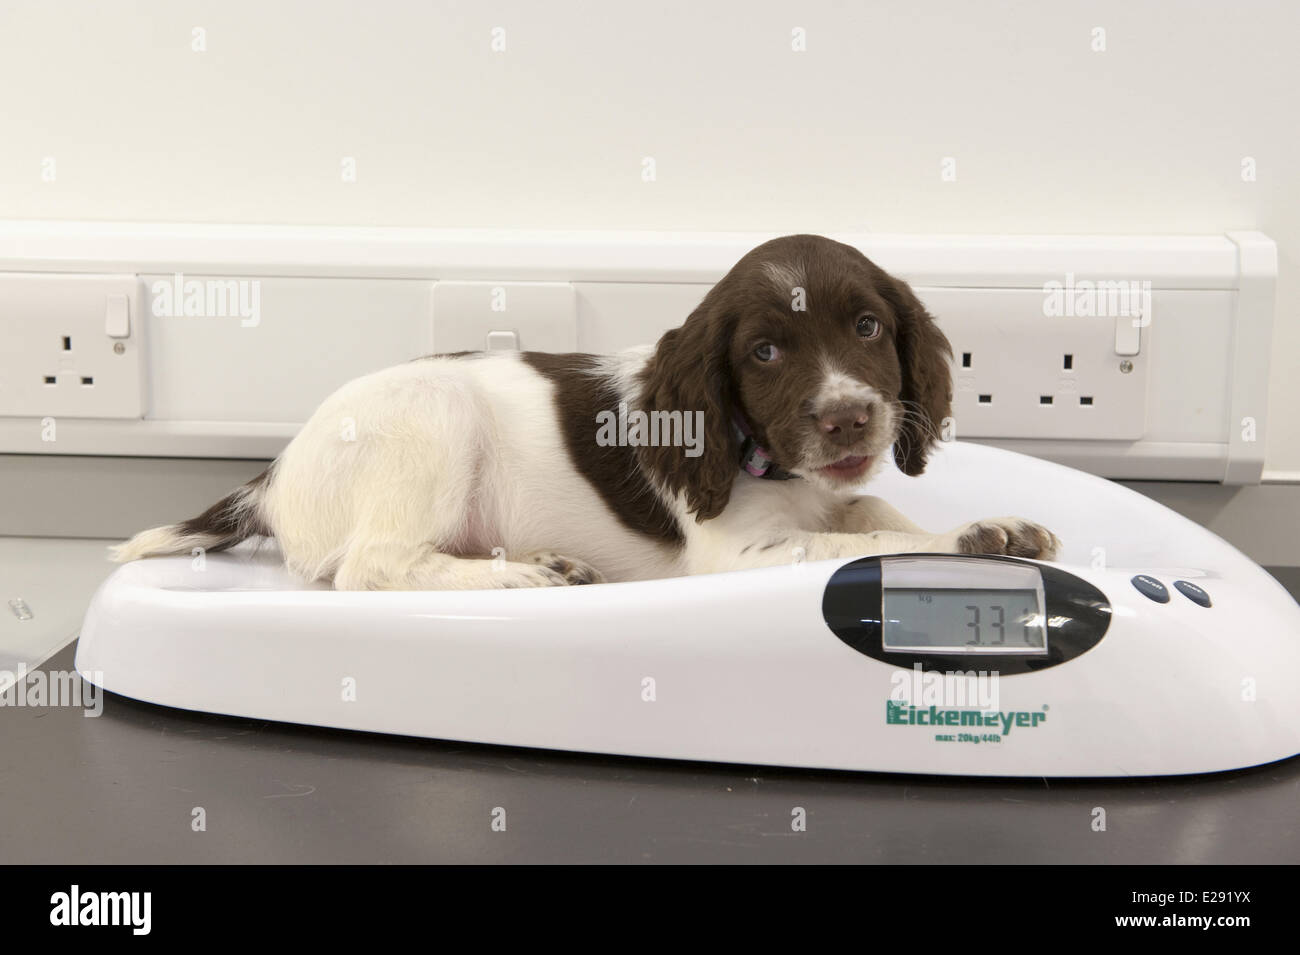 Inländische Hund, English Springer Spaniel Welpe auf wiegen Waage bei  Tierarztpraxis, England, Februar Stockfotografie - Alamy